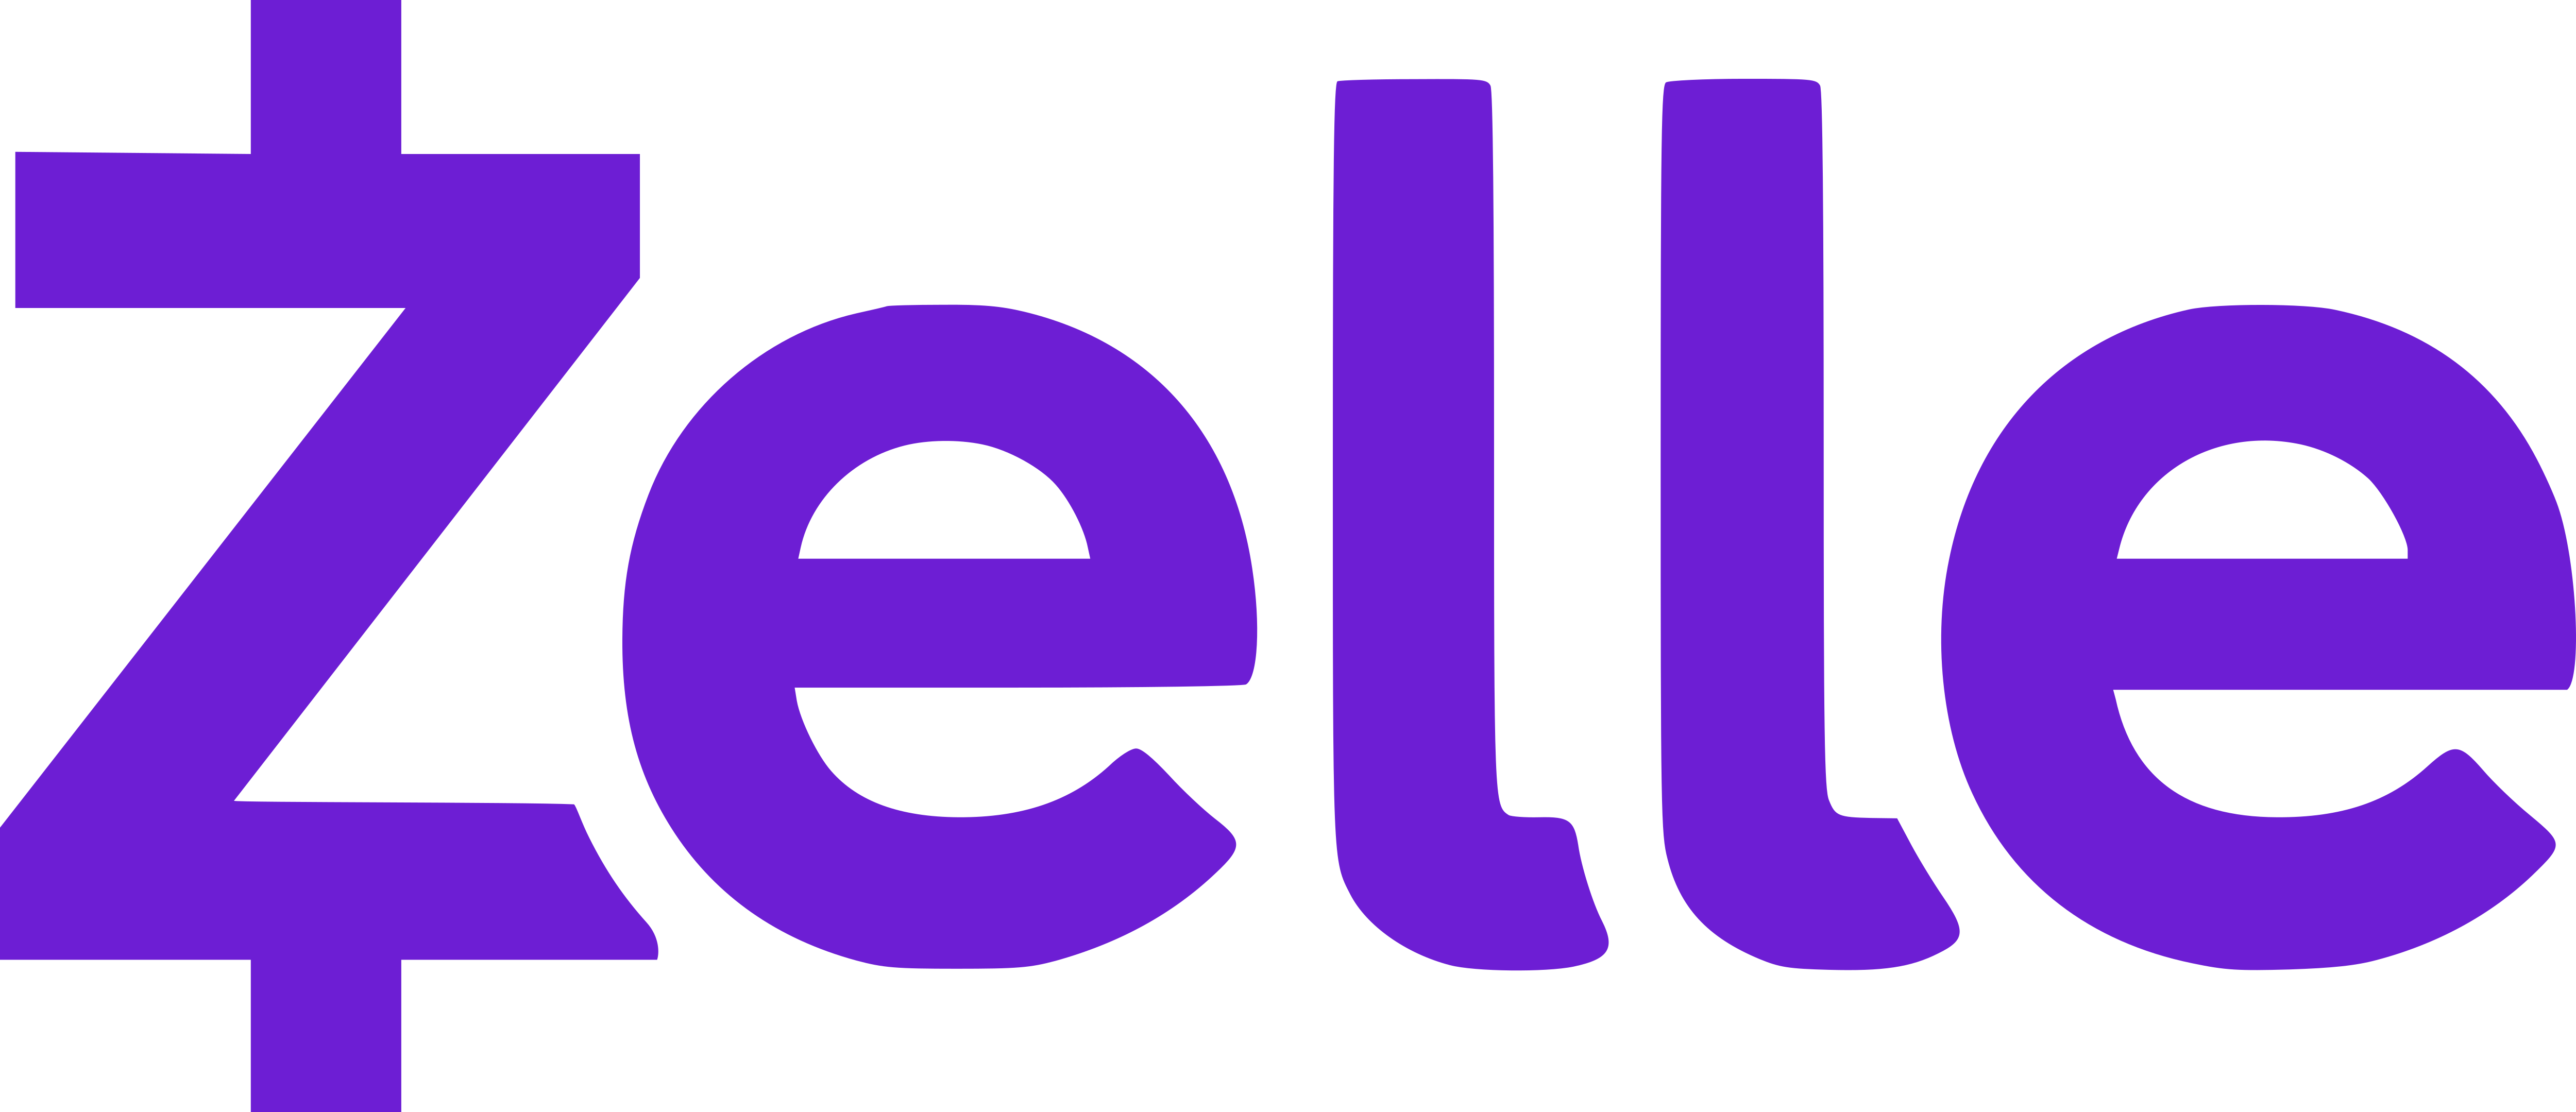 Zelle Logos Download